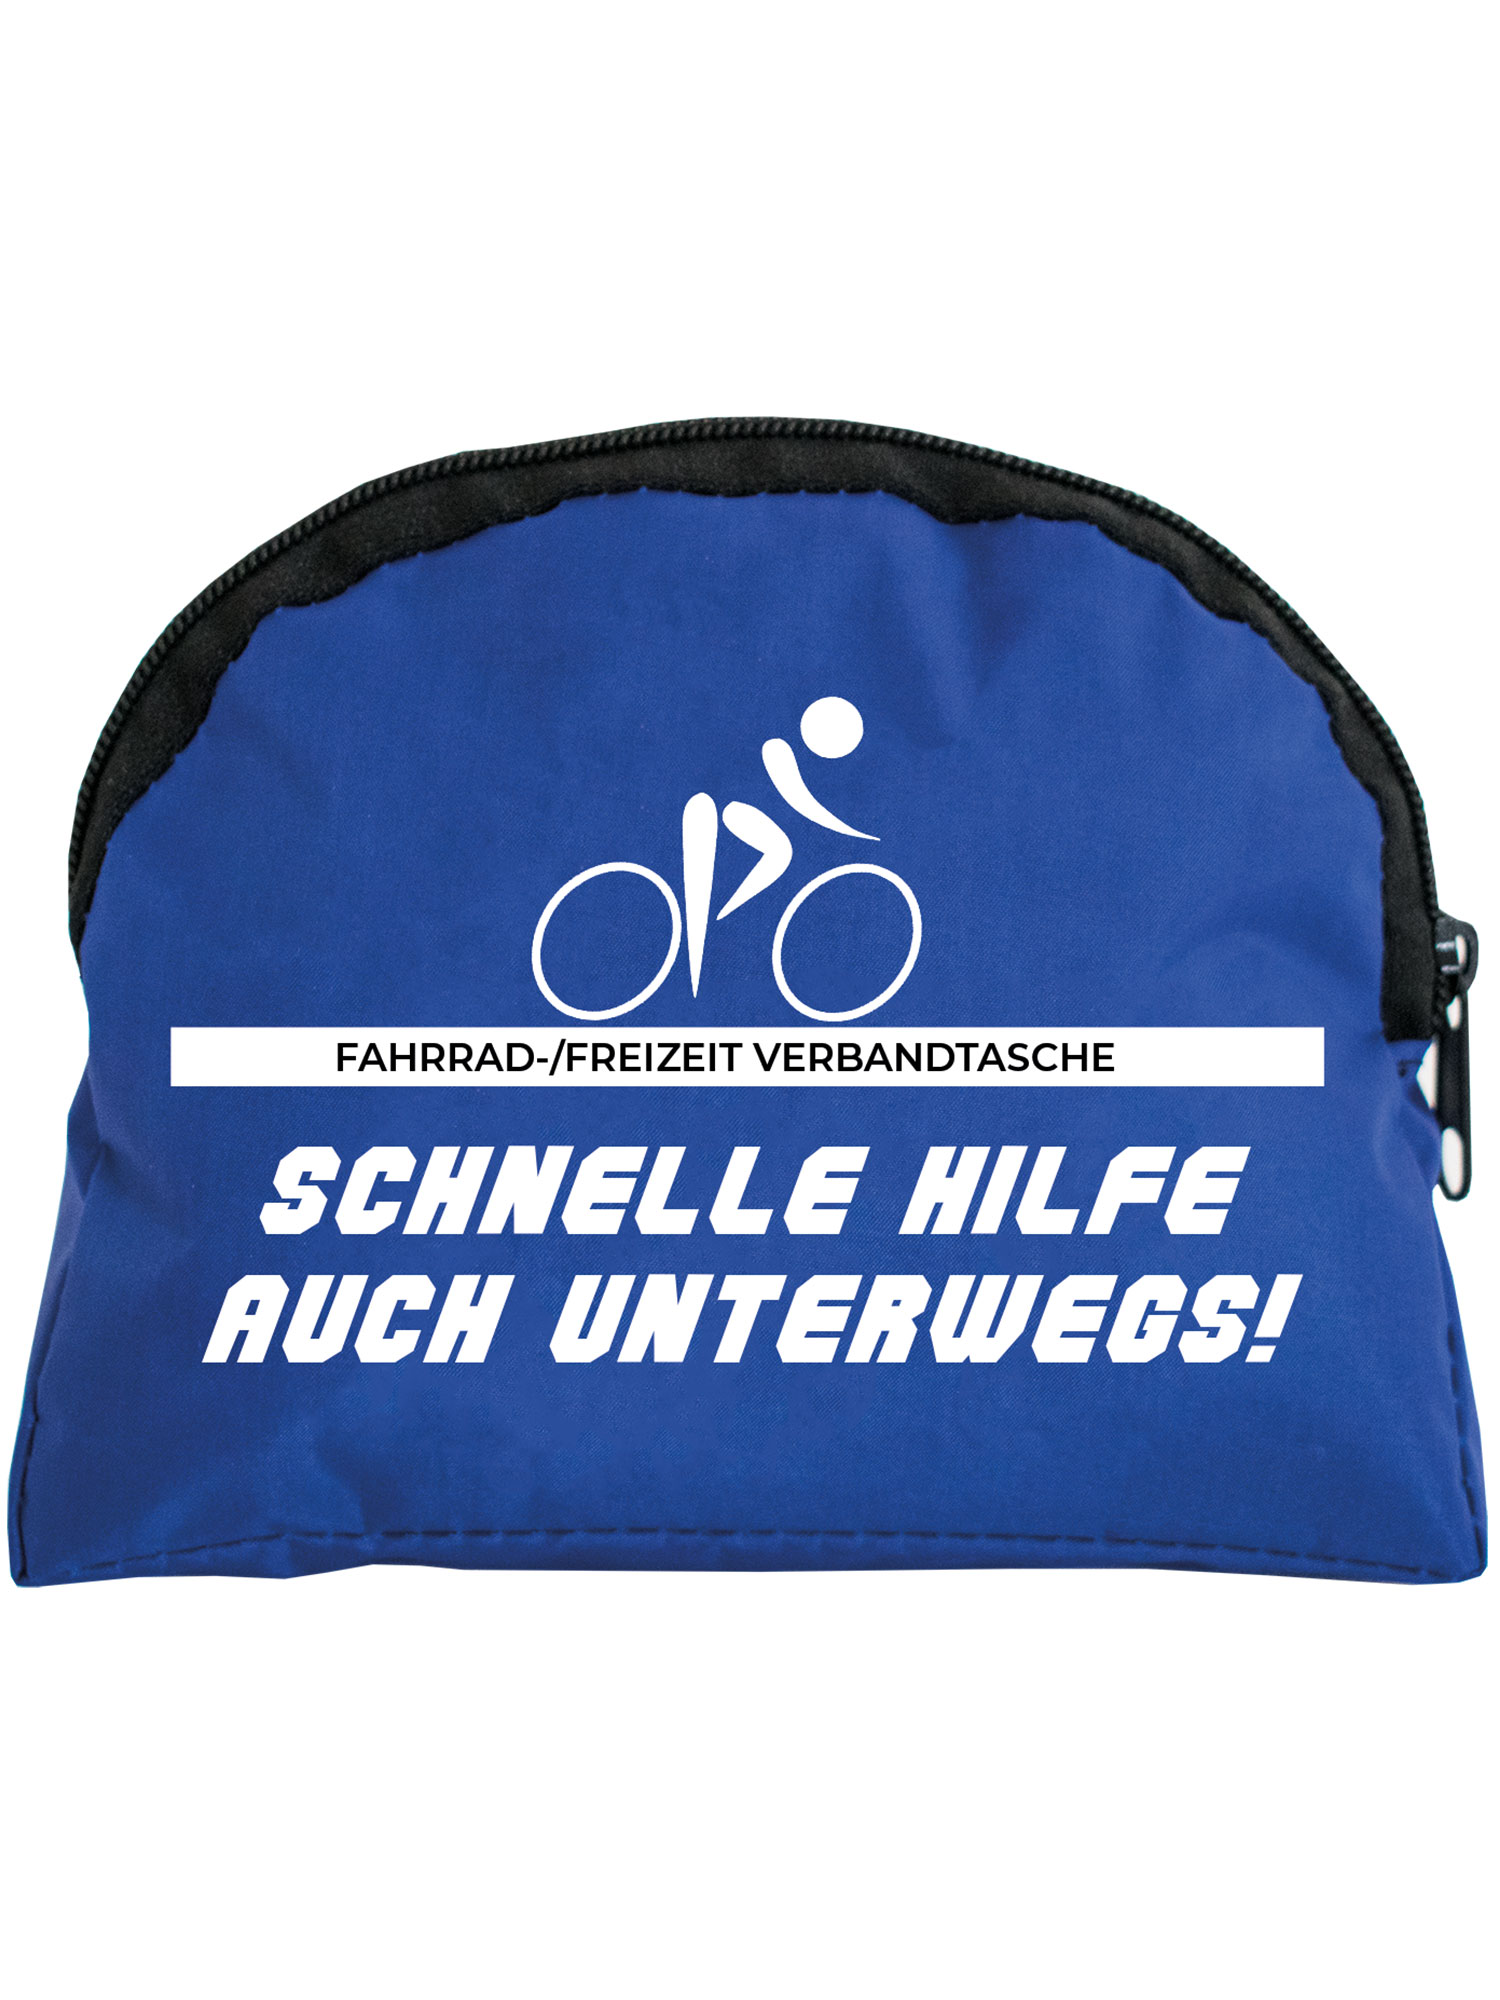 VELO® Fahrradverbandtasche - Erste Hilfe Tache Fahrradfahrer